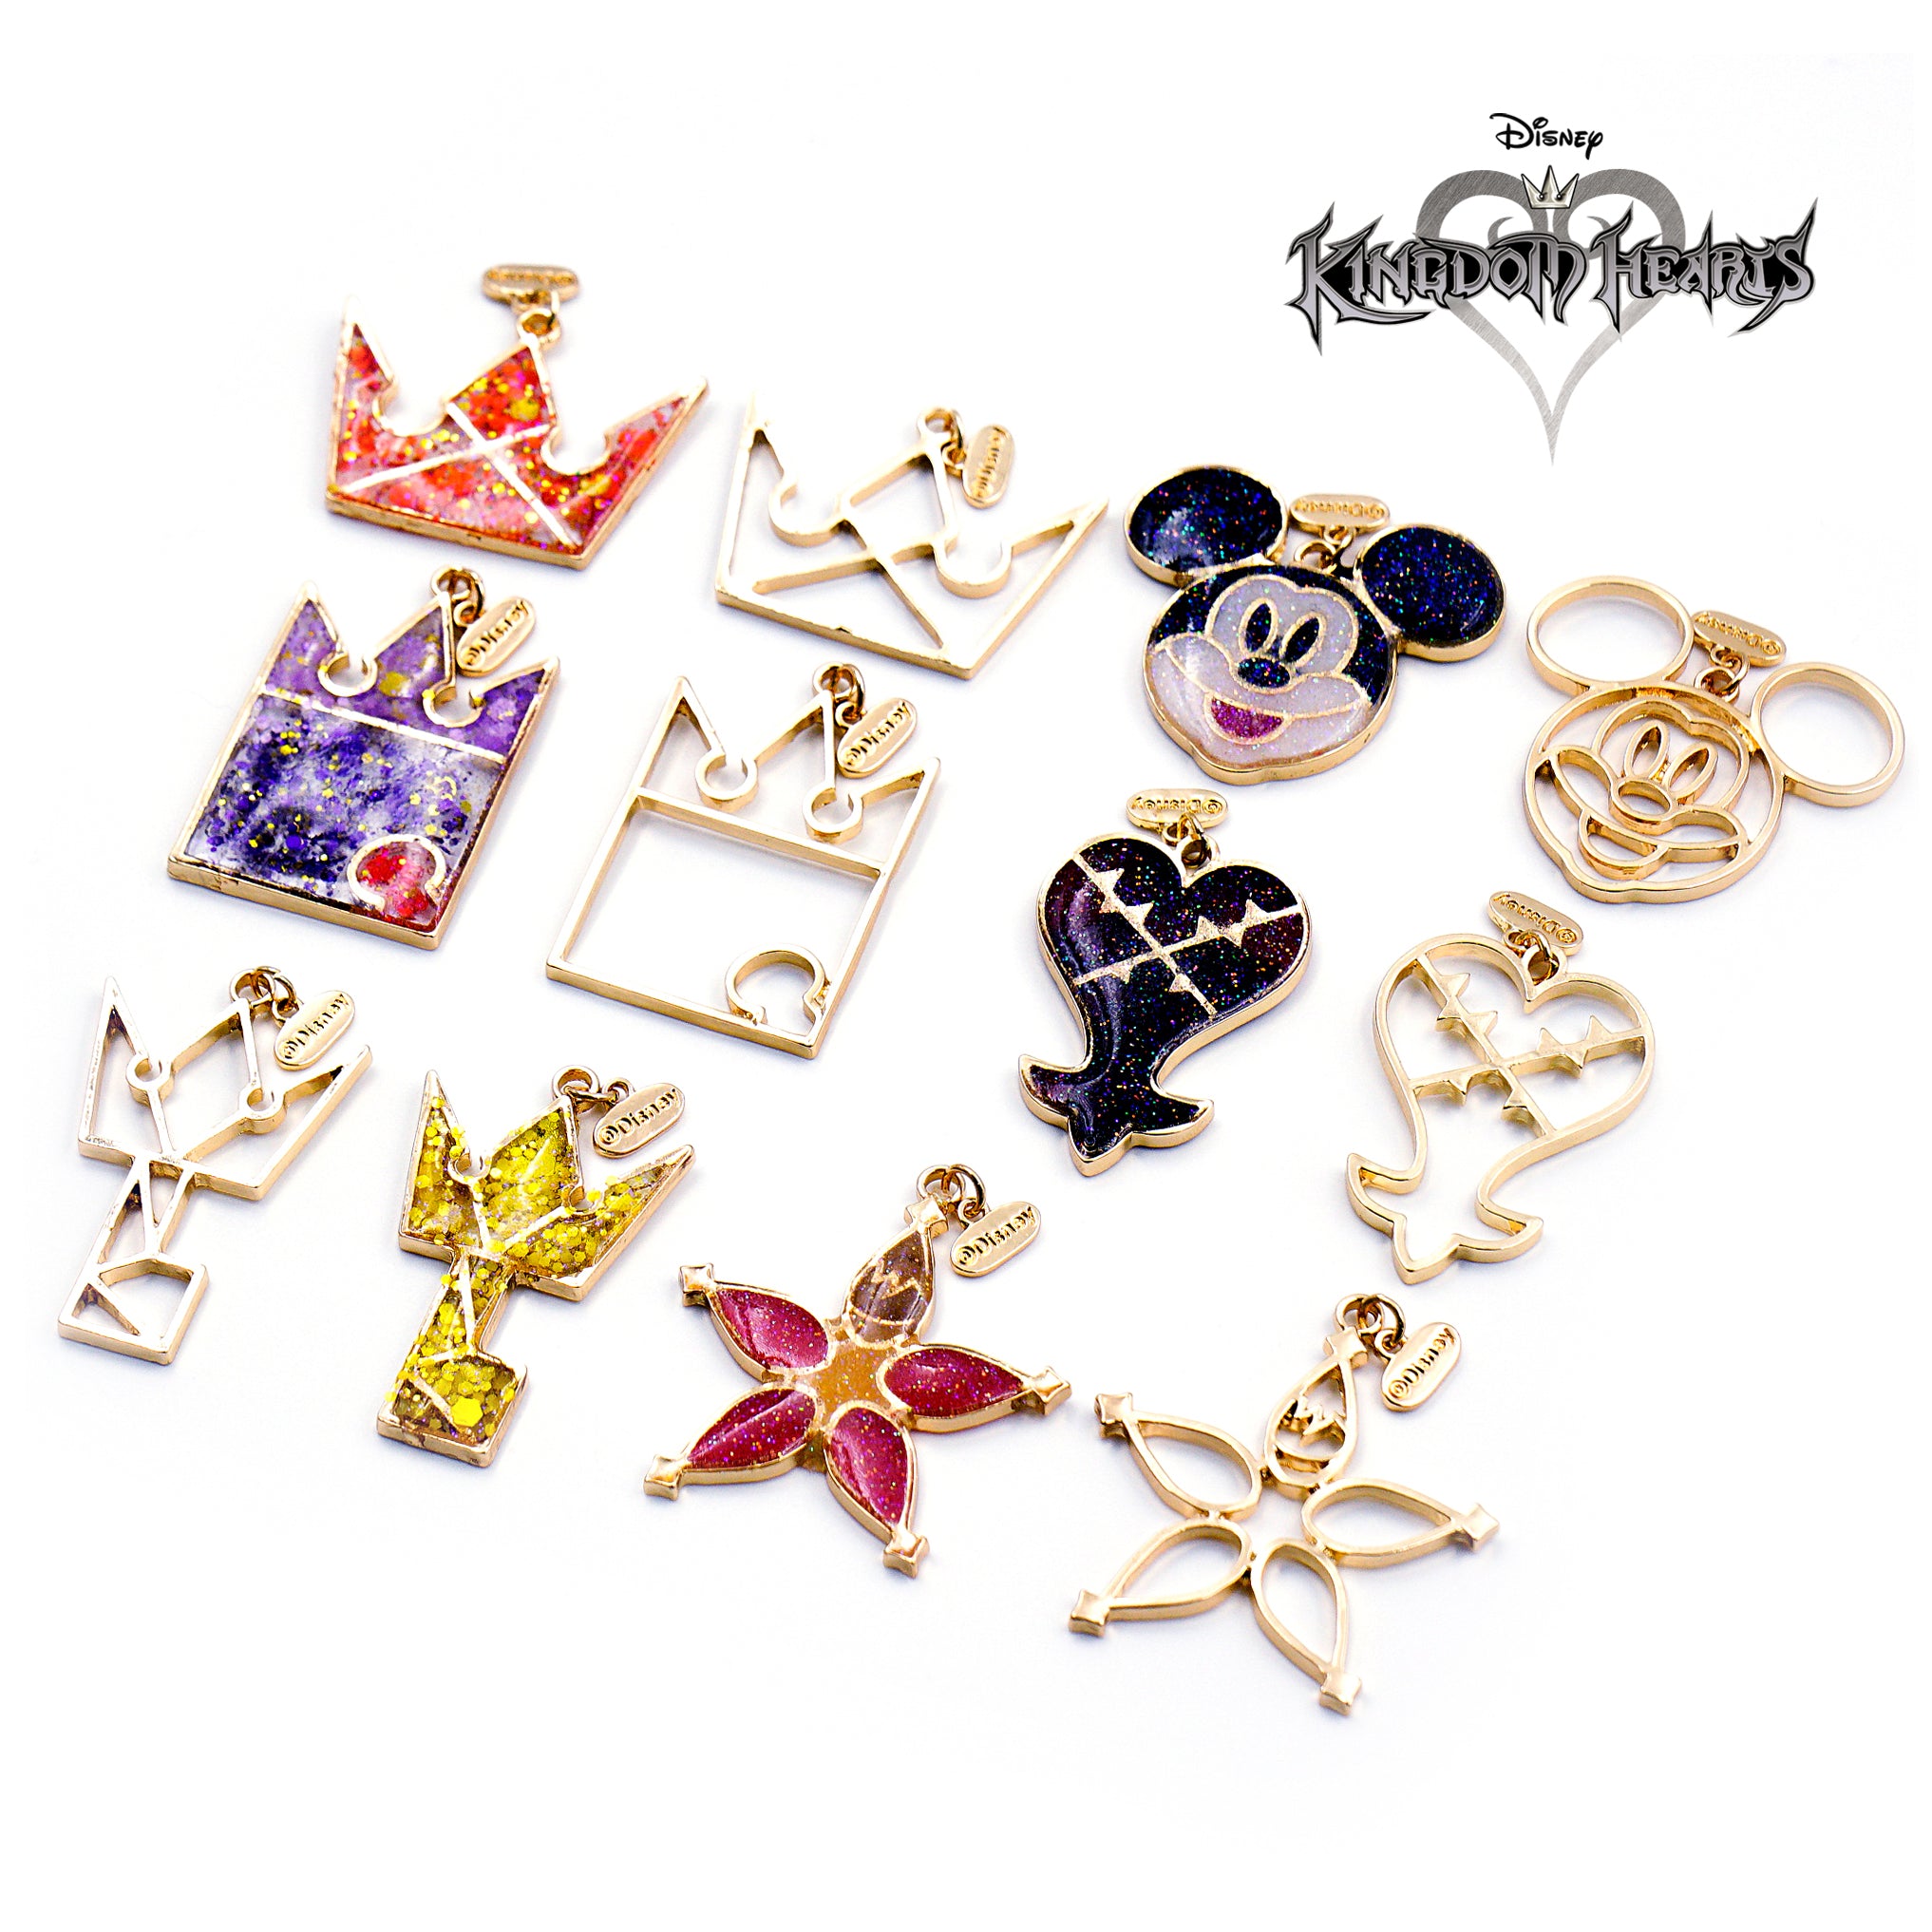 Disney Kingdom Hearts Silver Open Bezel Charms, Disney Resin Craft, Disney Charm, Mickey Charms